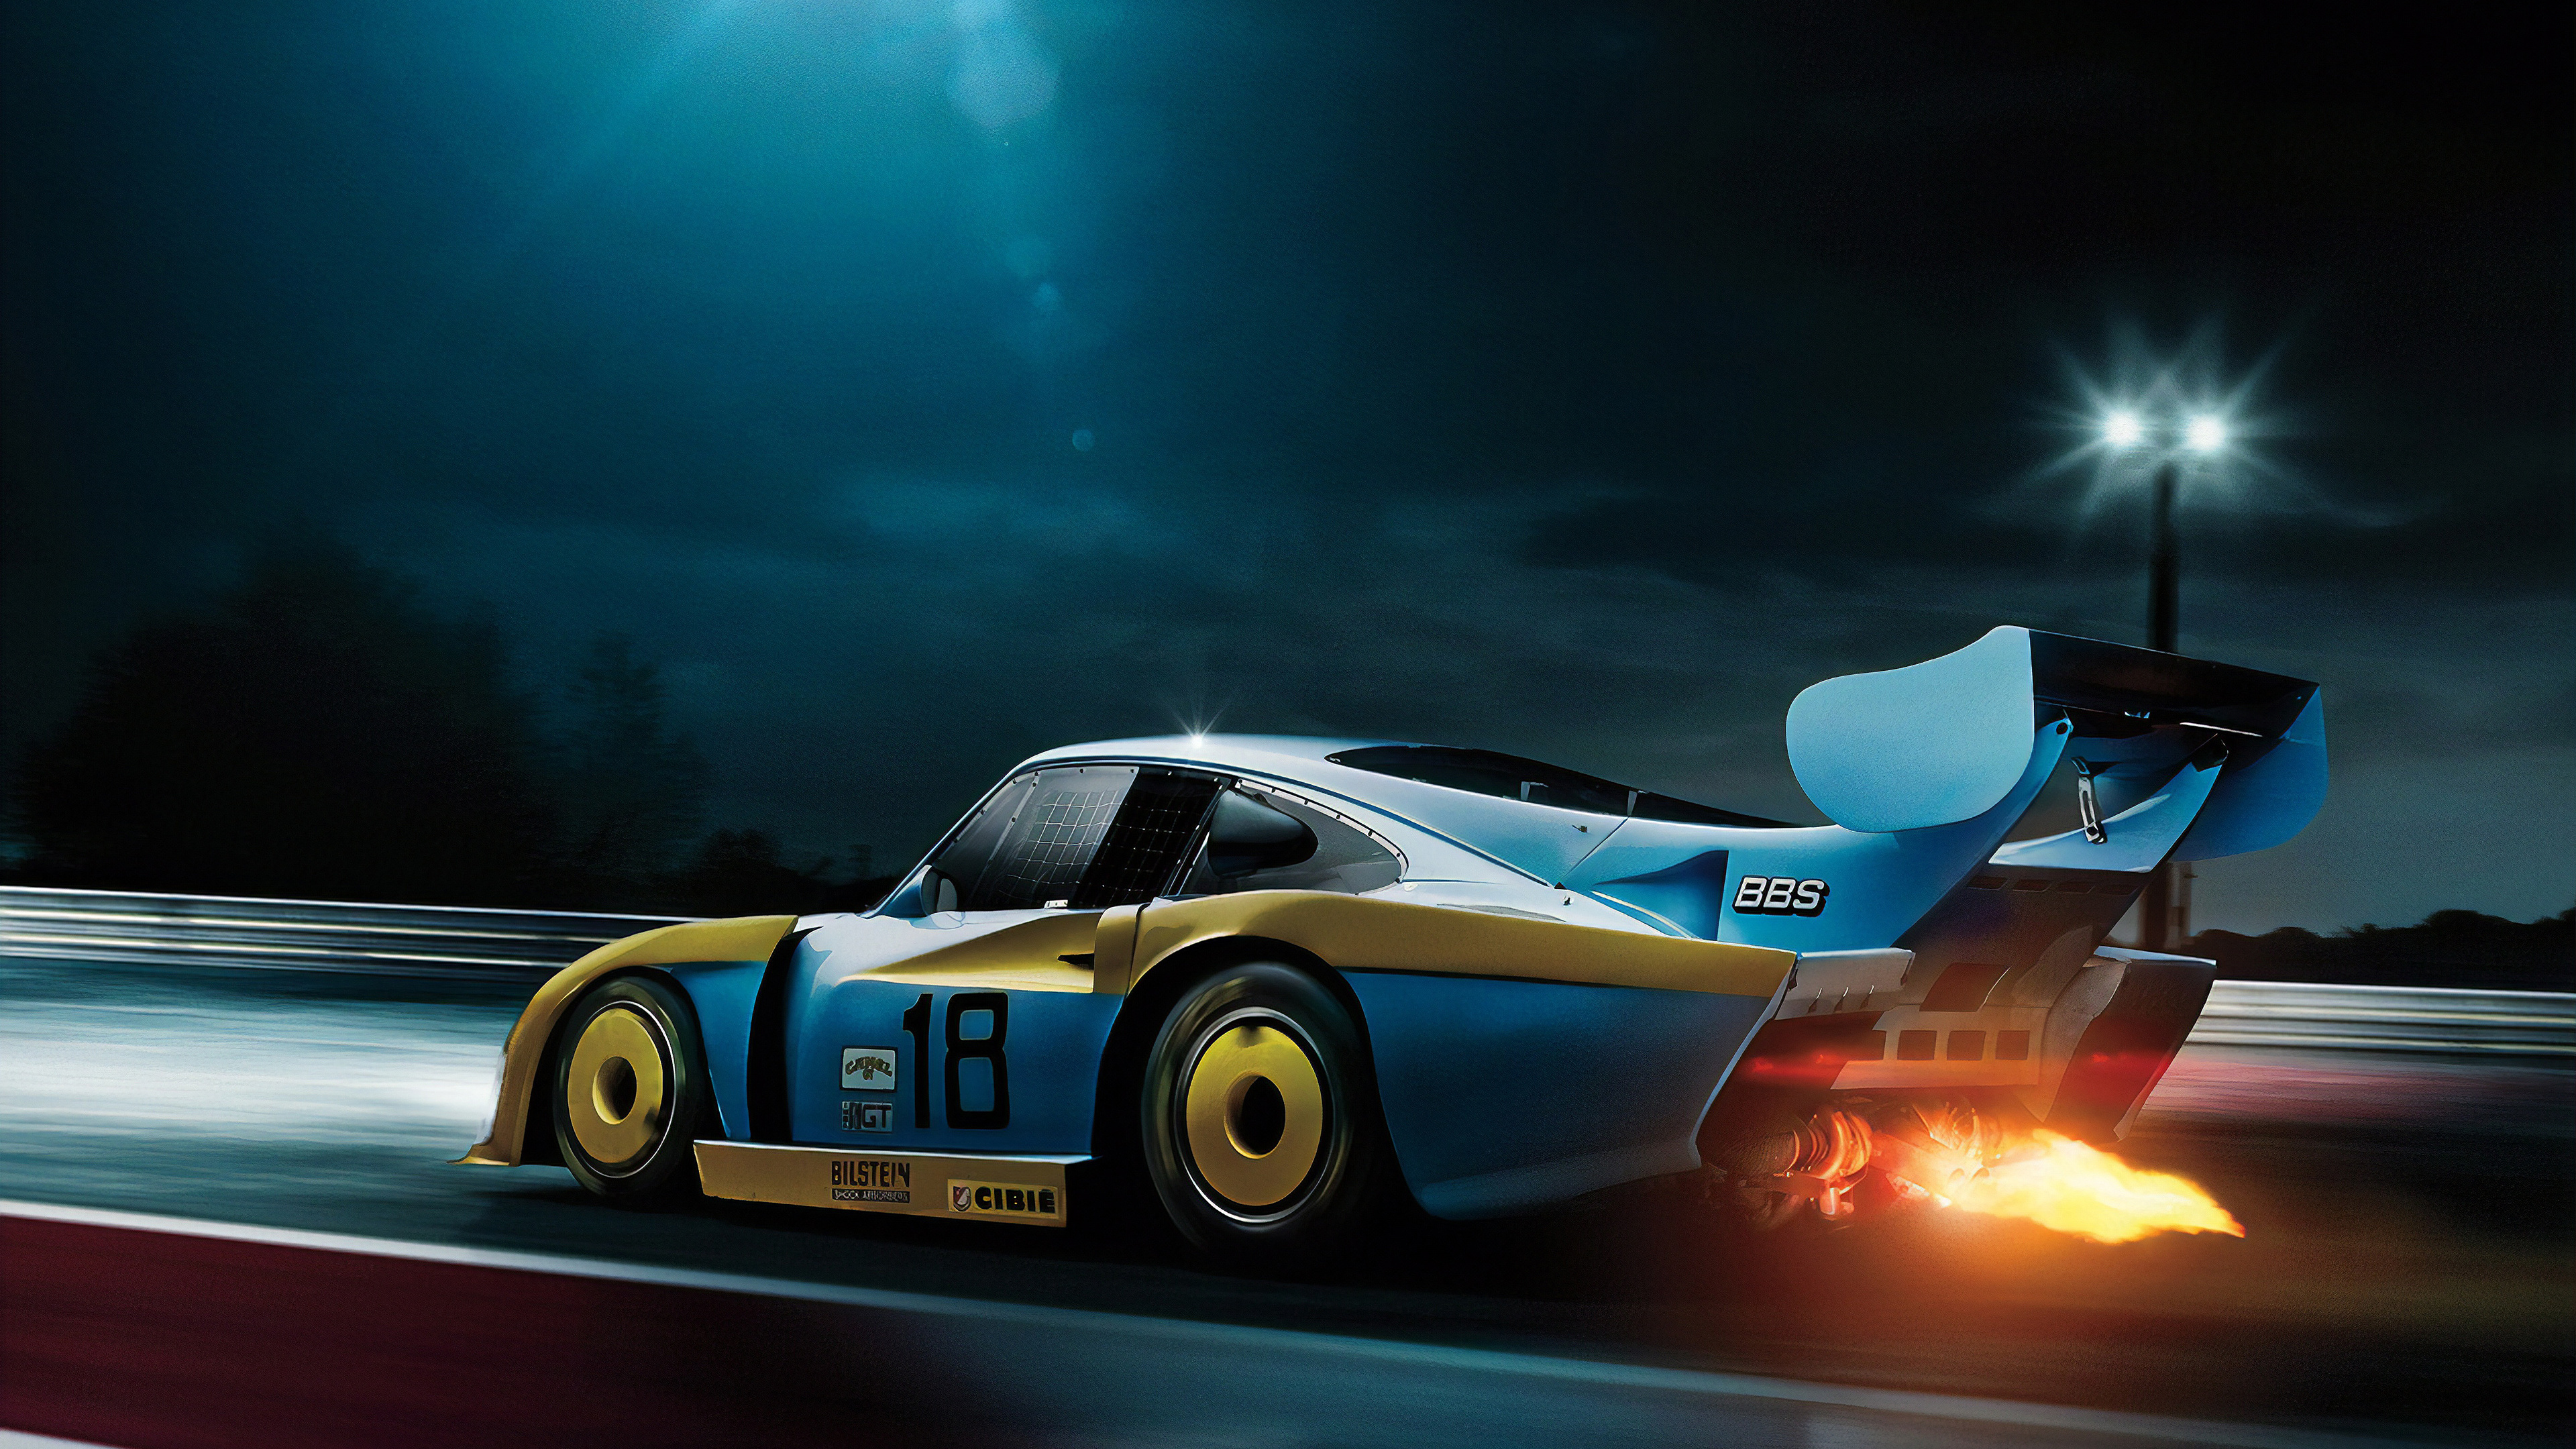 Porsche 911 Blanche et Bleue Sur Route la Nuit. Wallpaper in 3840x2160 Resolution